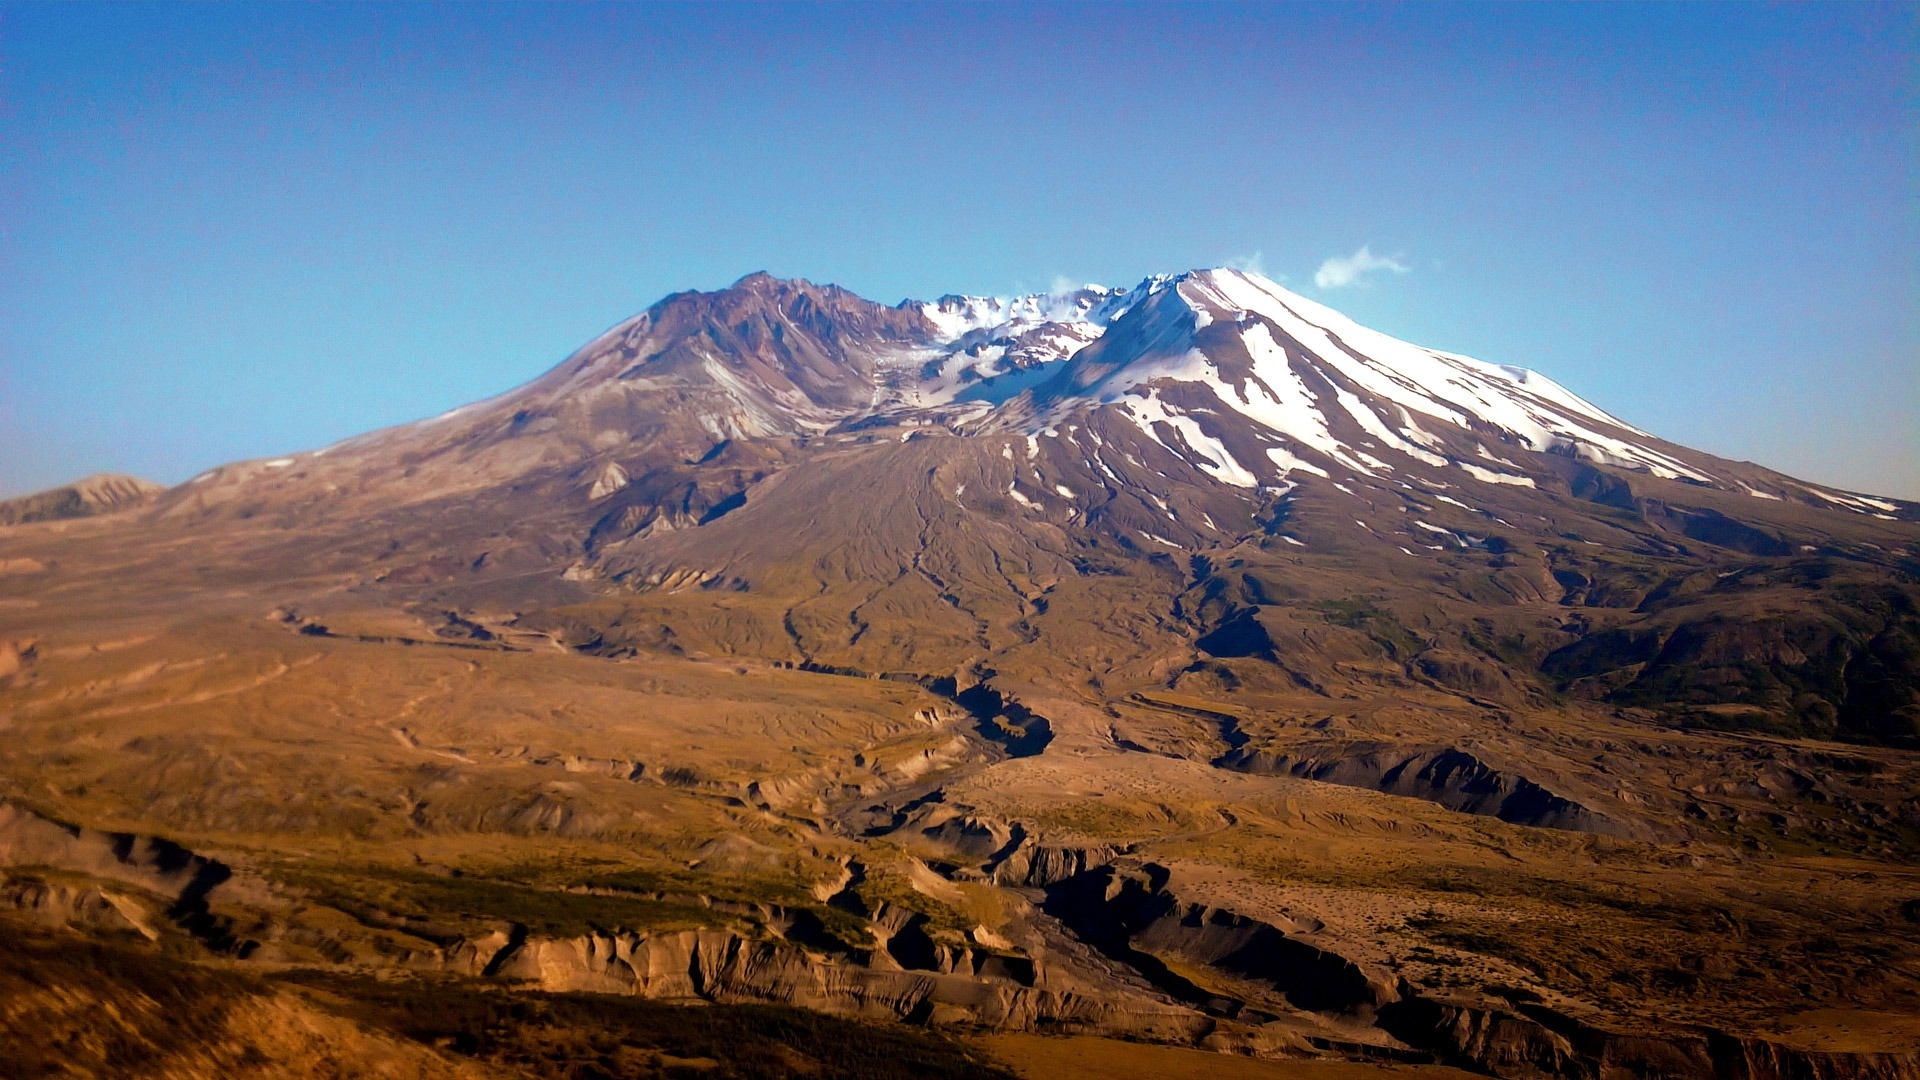 Mount St. Helens, Wilderness adventure, Volcanic ridge, Active eruption, 1920x1080 Full HD Desktop